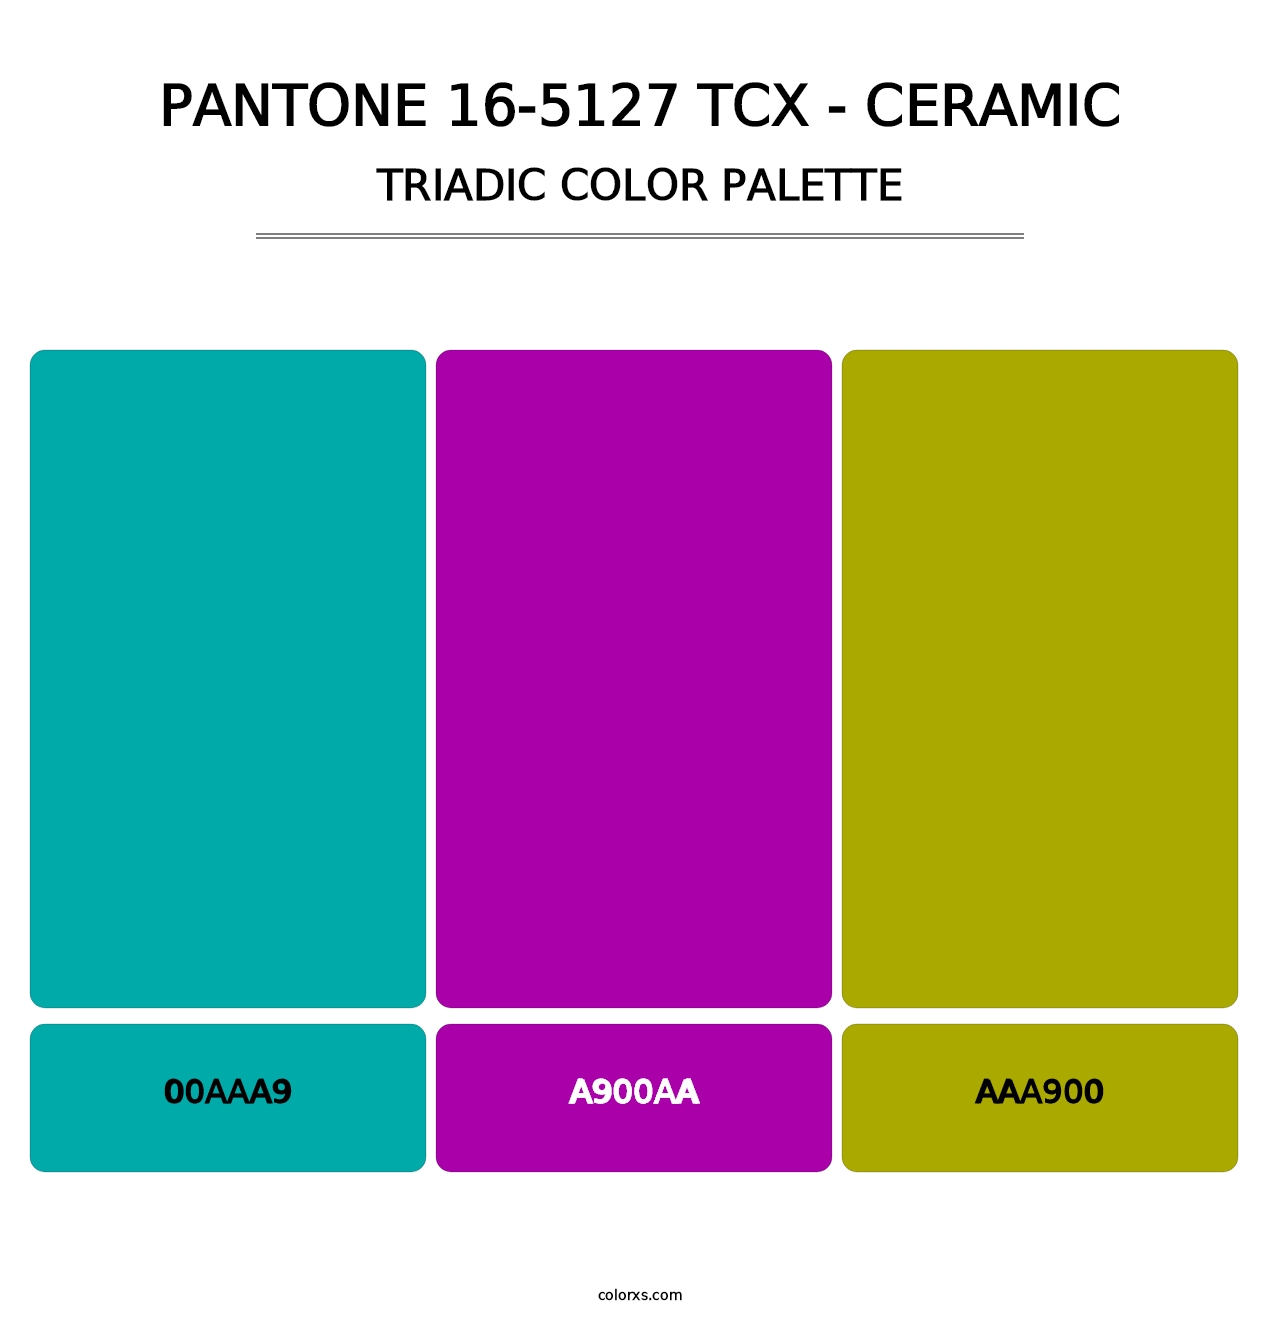 PANTONE 16-5127 TCX - Ceramic - Triadic Color Palette